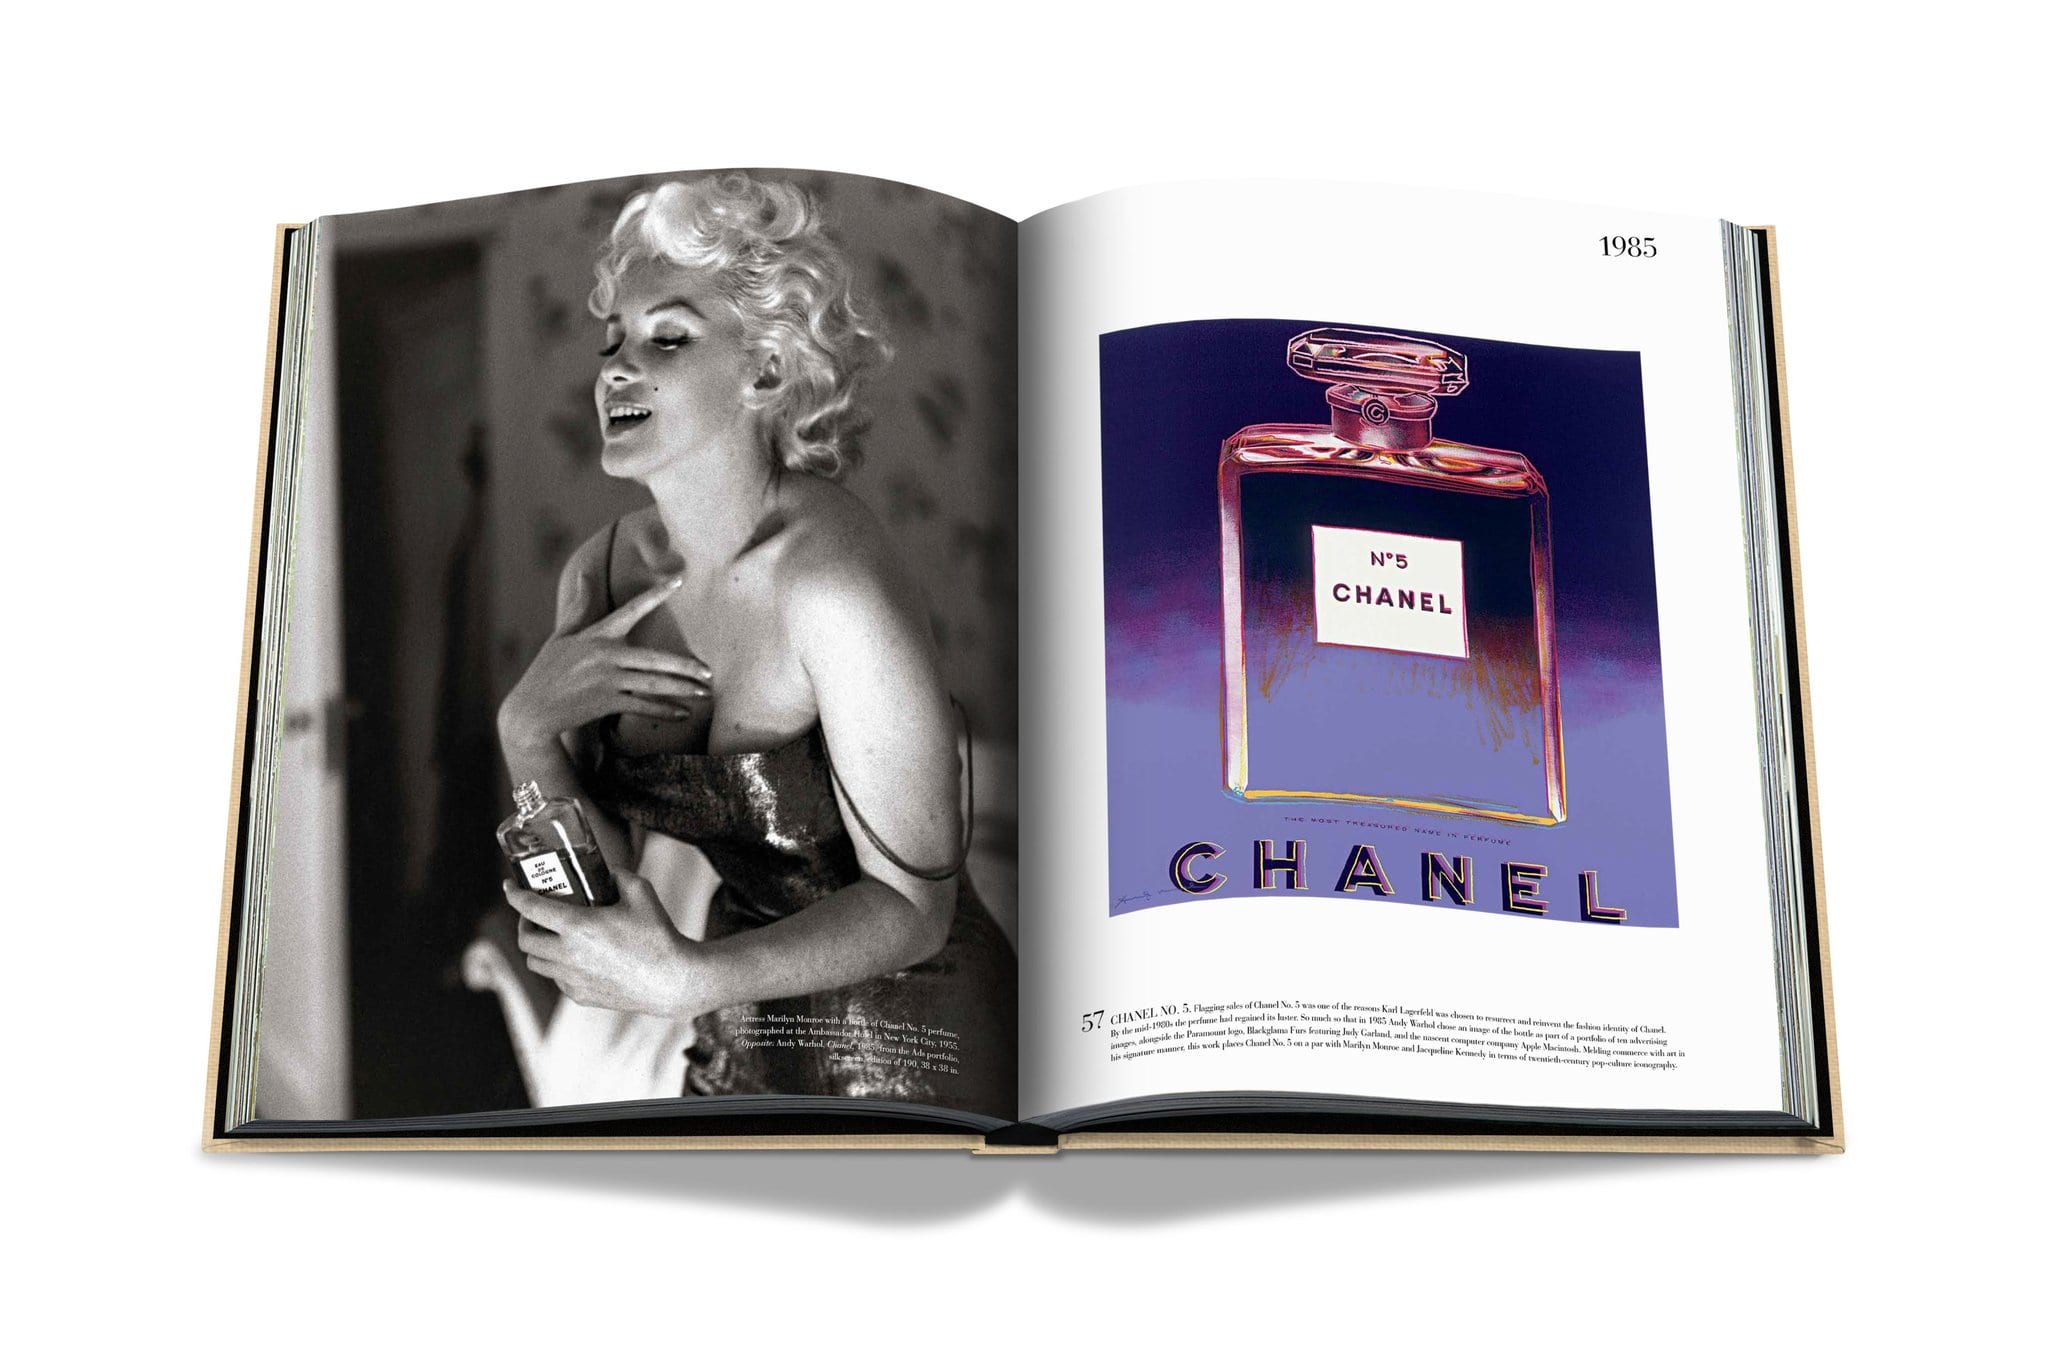 Assouline De onmogelijke collectie van Chanel